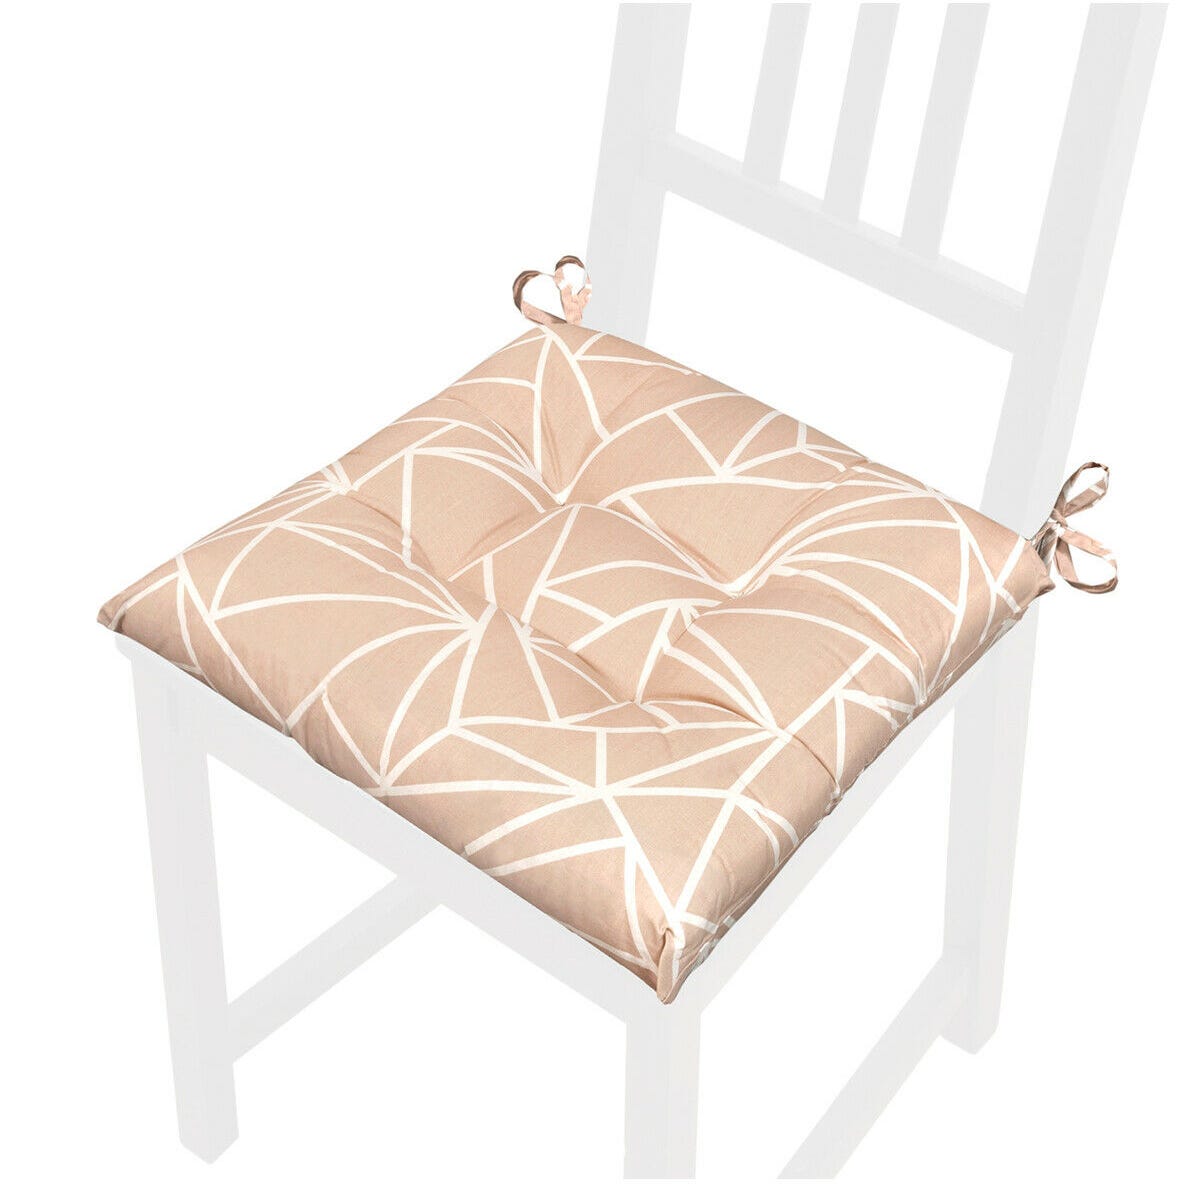 Cuscini per sedia laccetti Cuore beige